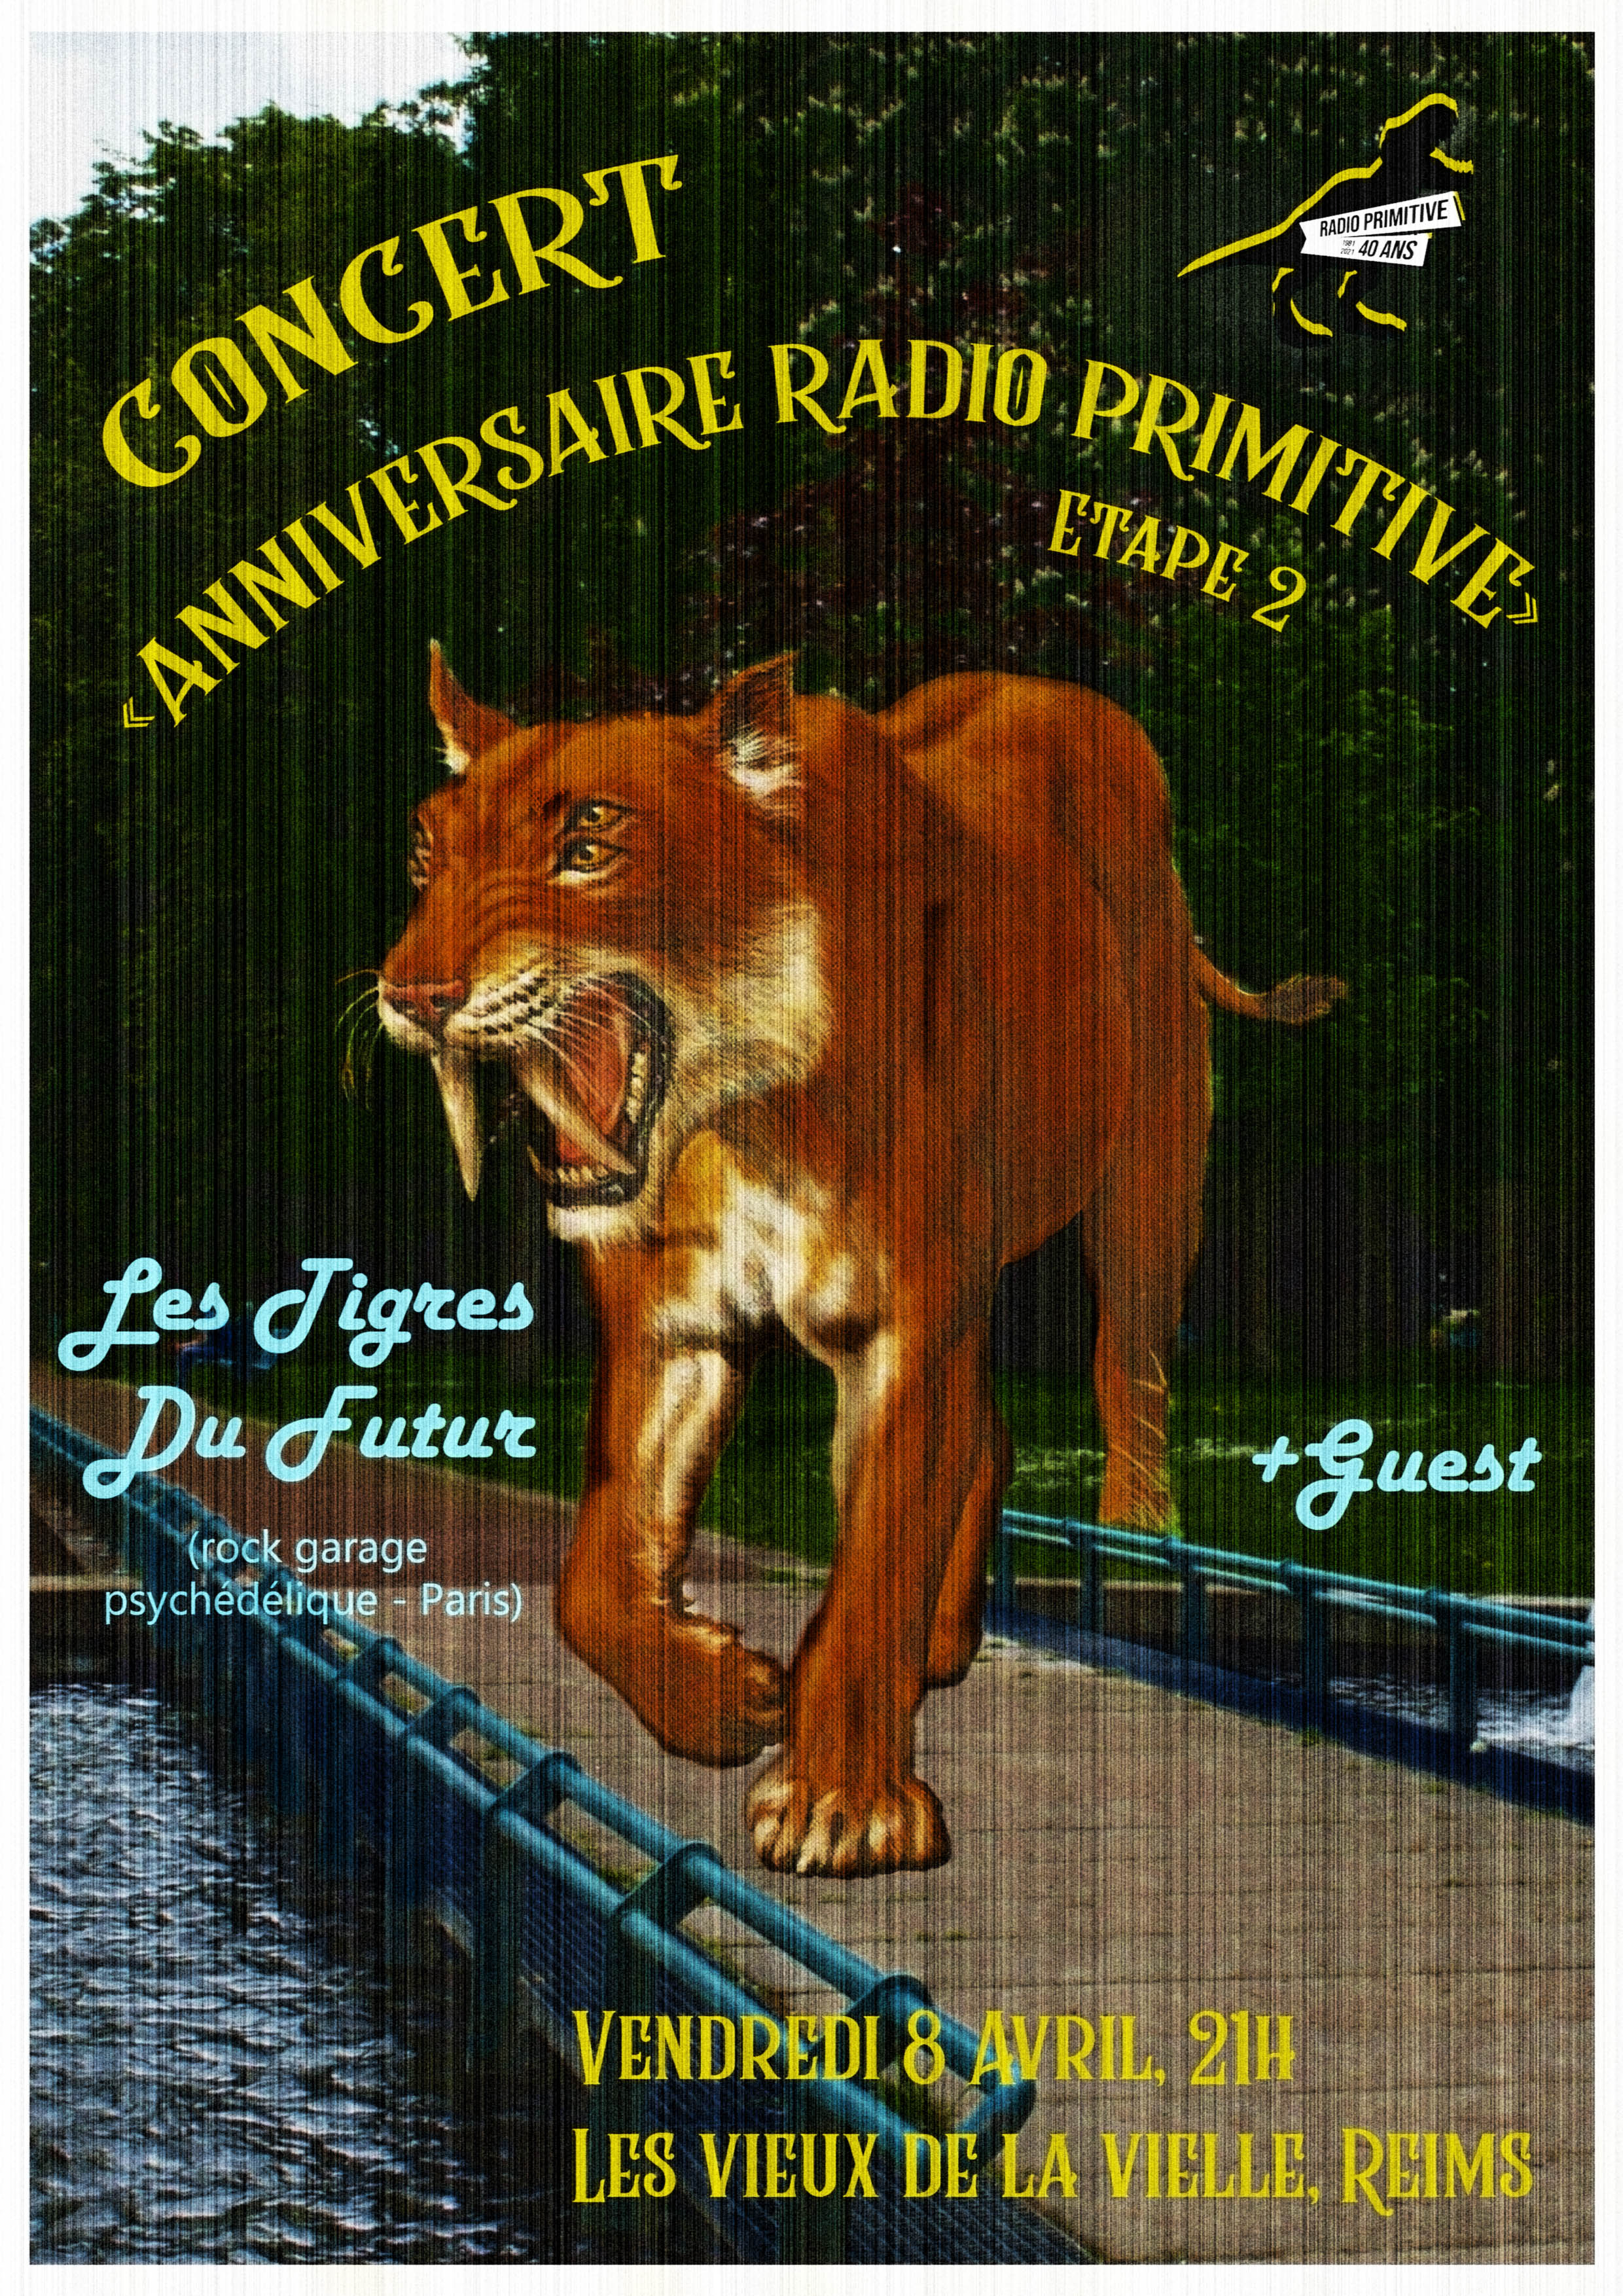 🦖 Radio Primitive fête ses 40 ans : étape #2 le 8 avril !